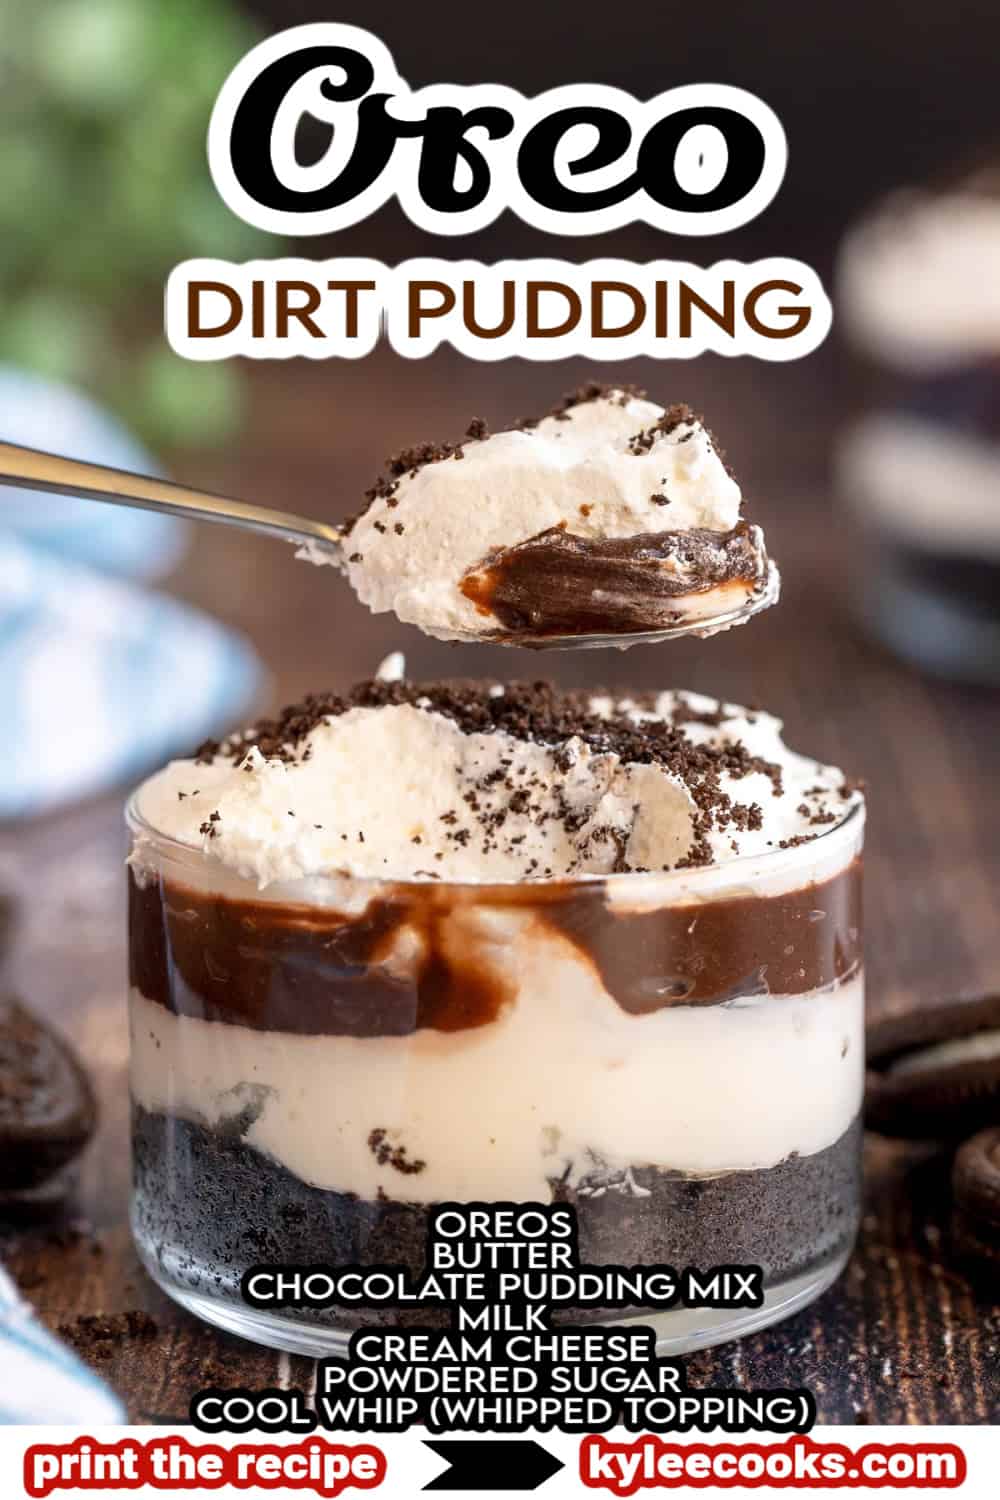 Oreo Dirt pudding dans un verre, avec les ingrédients de la recette et le titre superposés dans le texte.